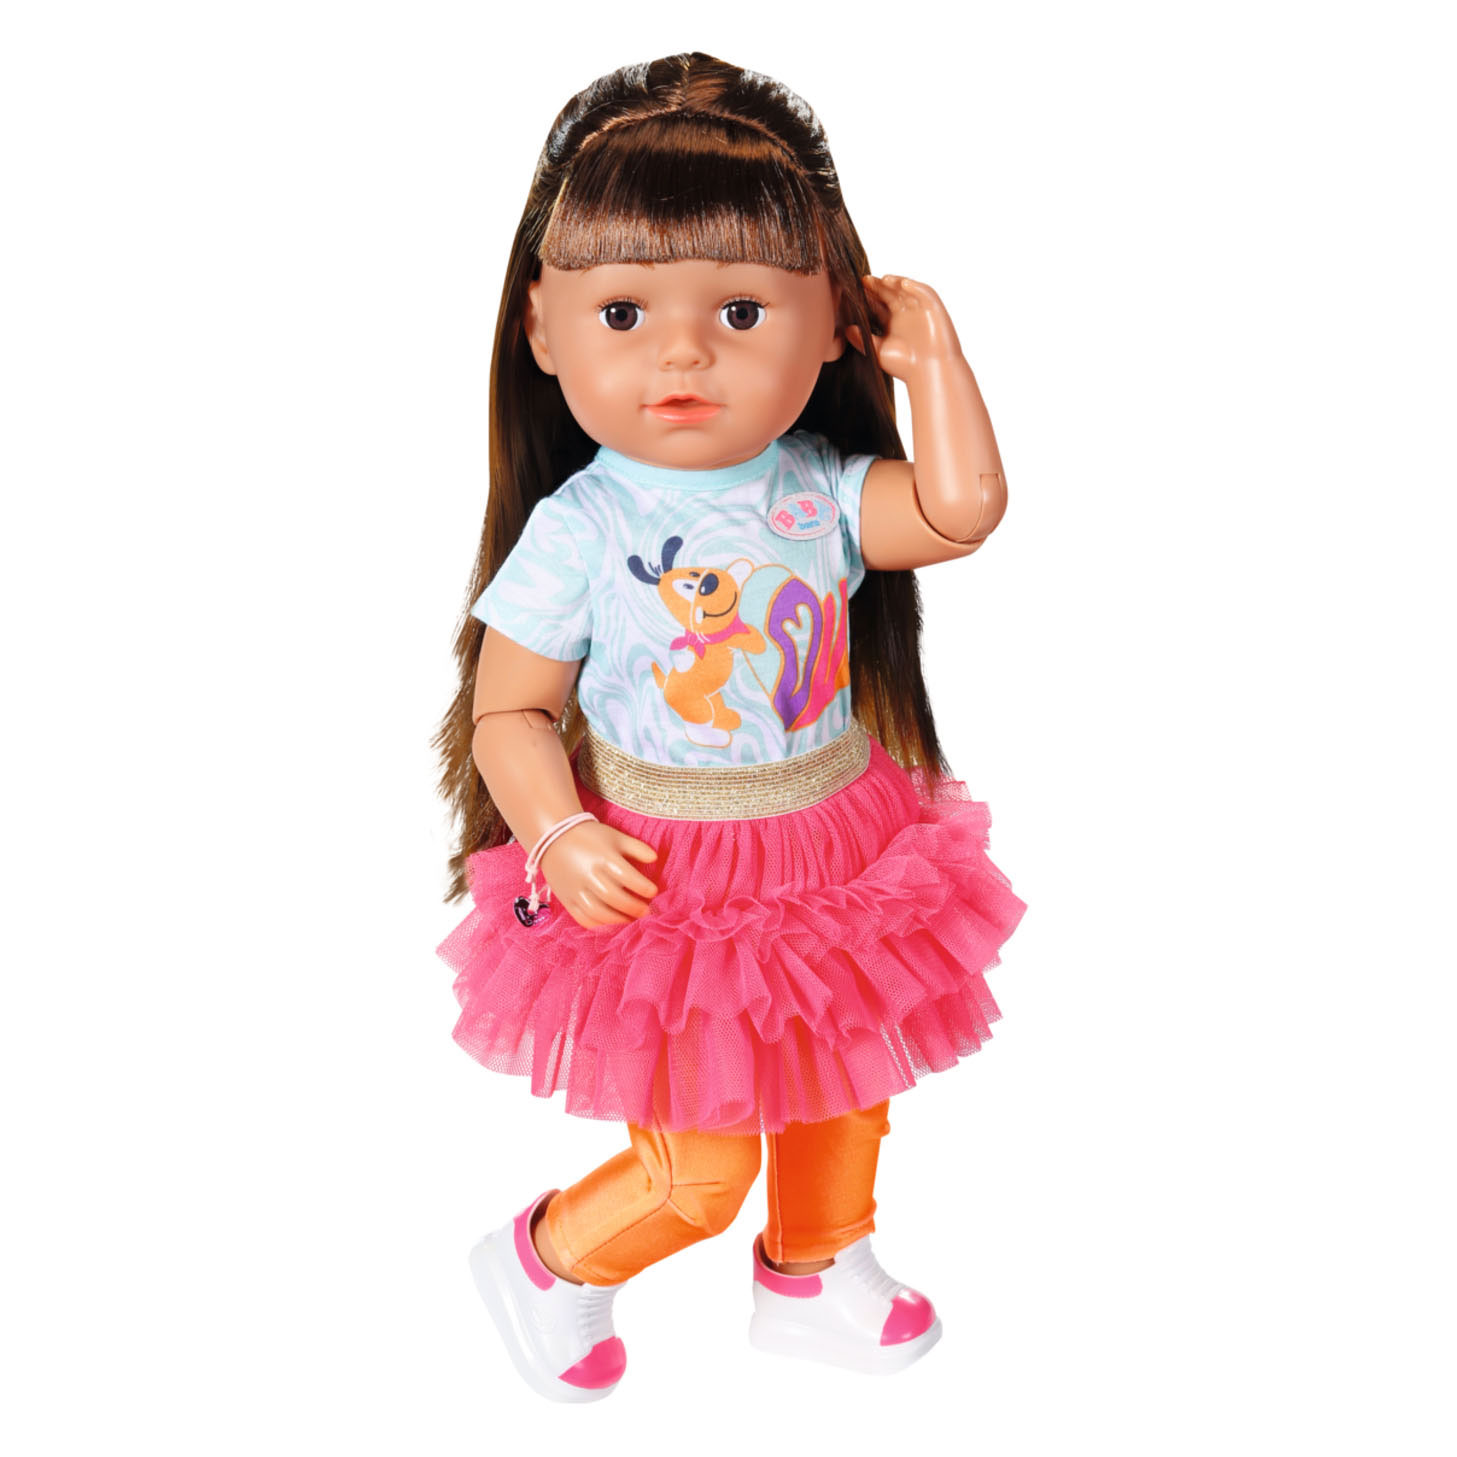 Mini poupée ou vêtements petite fille soeur ou petit garçon frère 14 cm 5,3